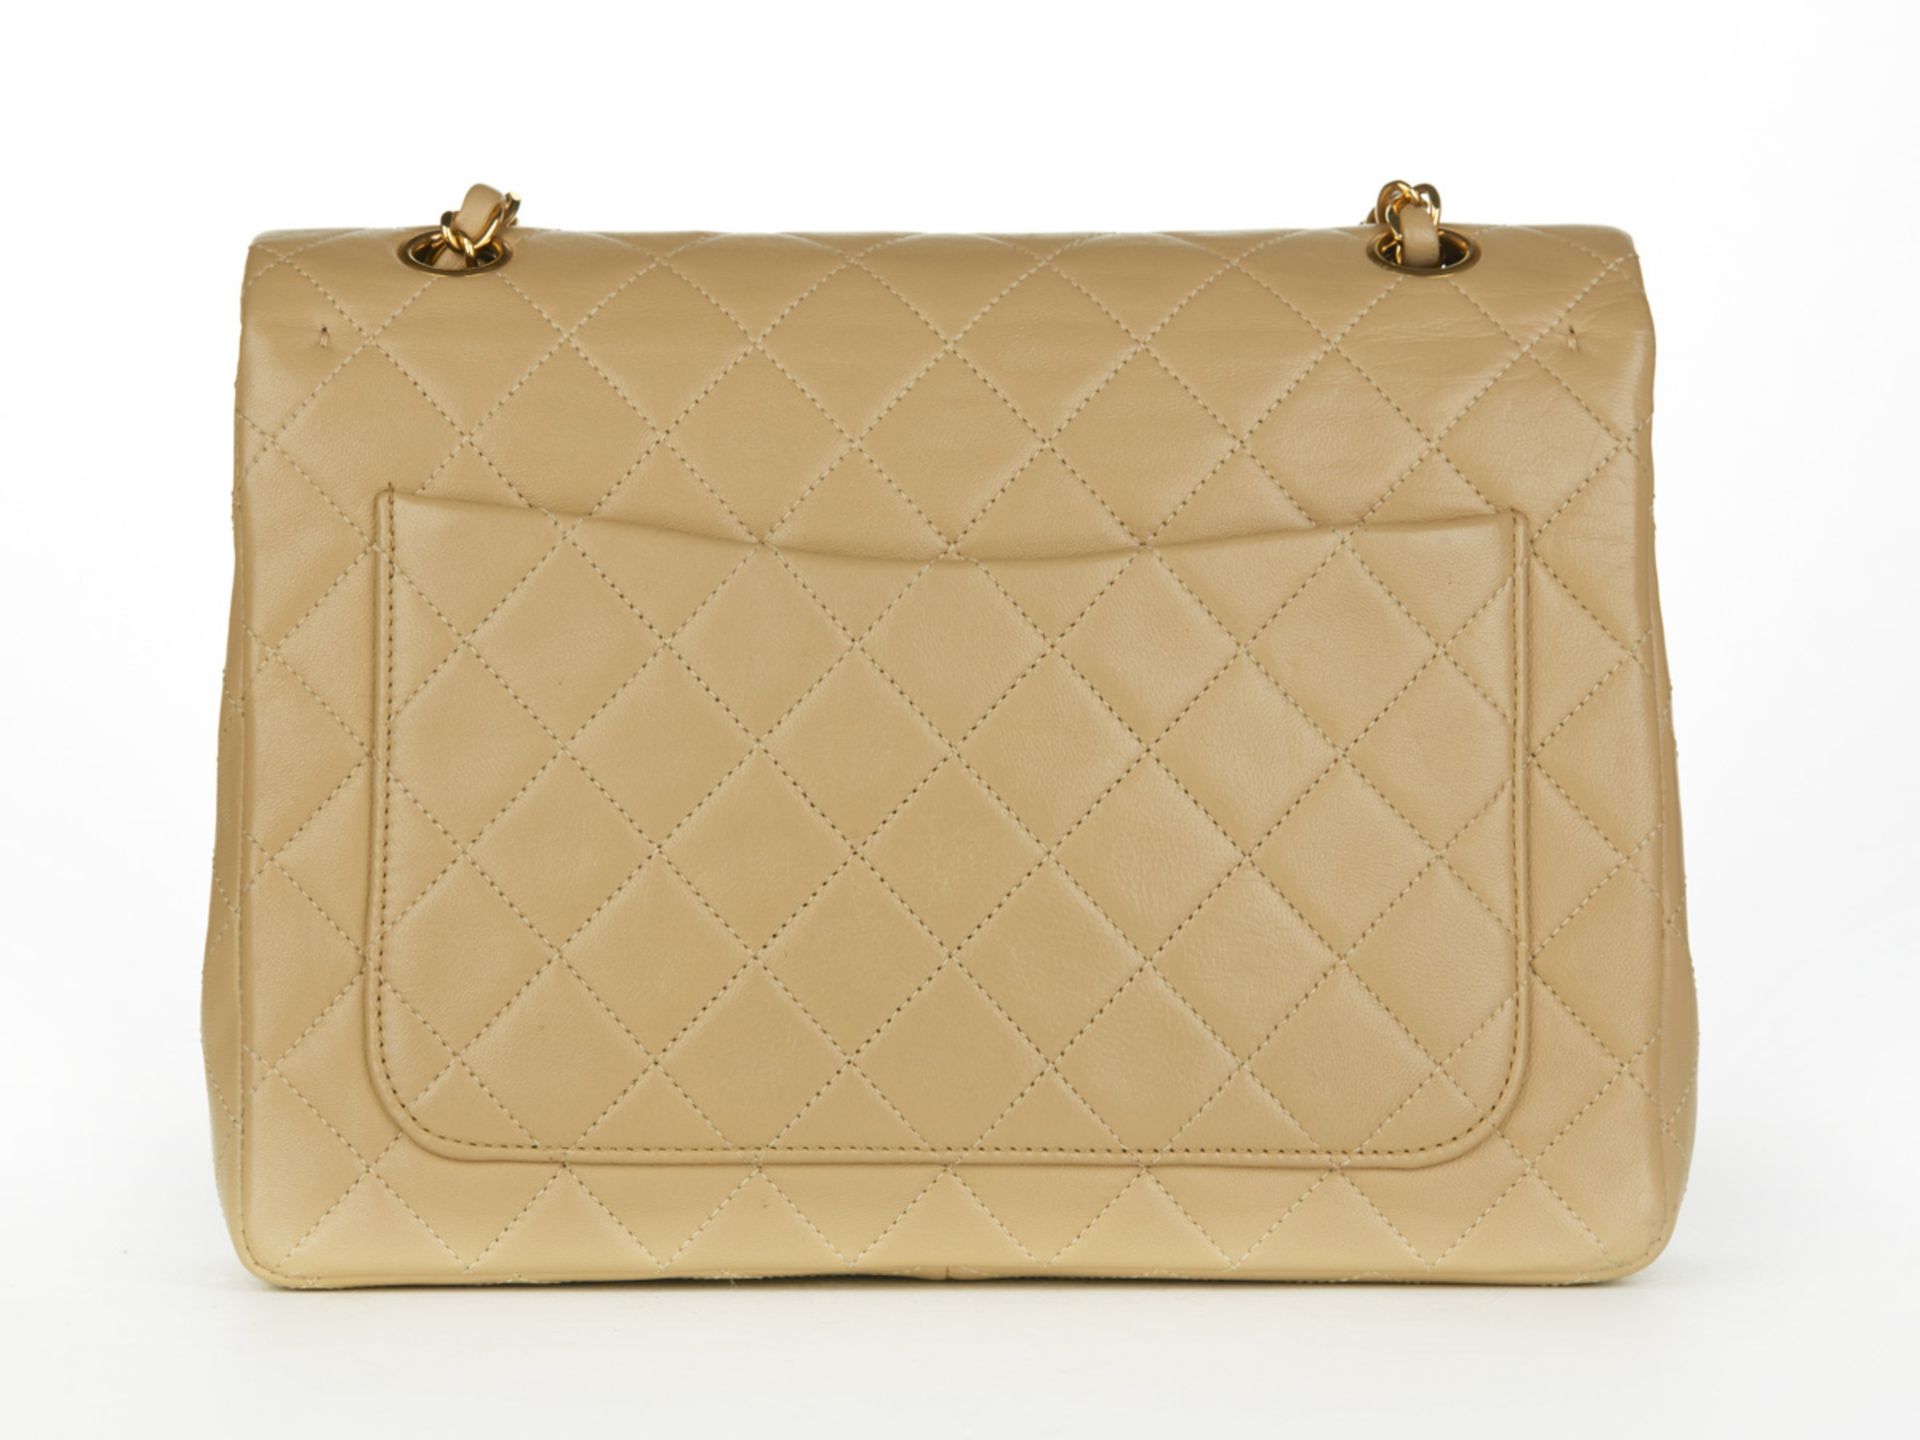 HB097 Chanel - Jumbo Classic Double Flap Bag - Image 4 of 10